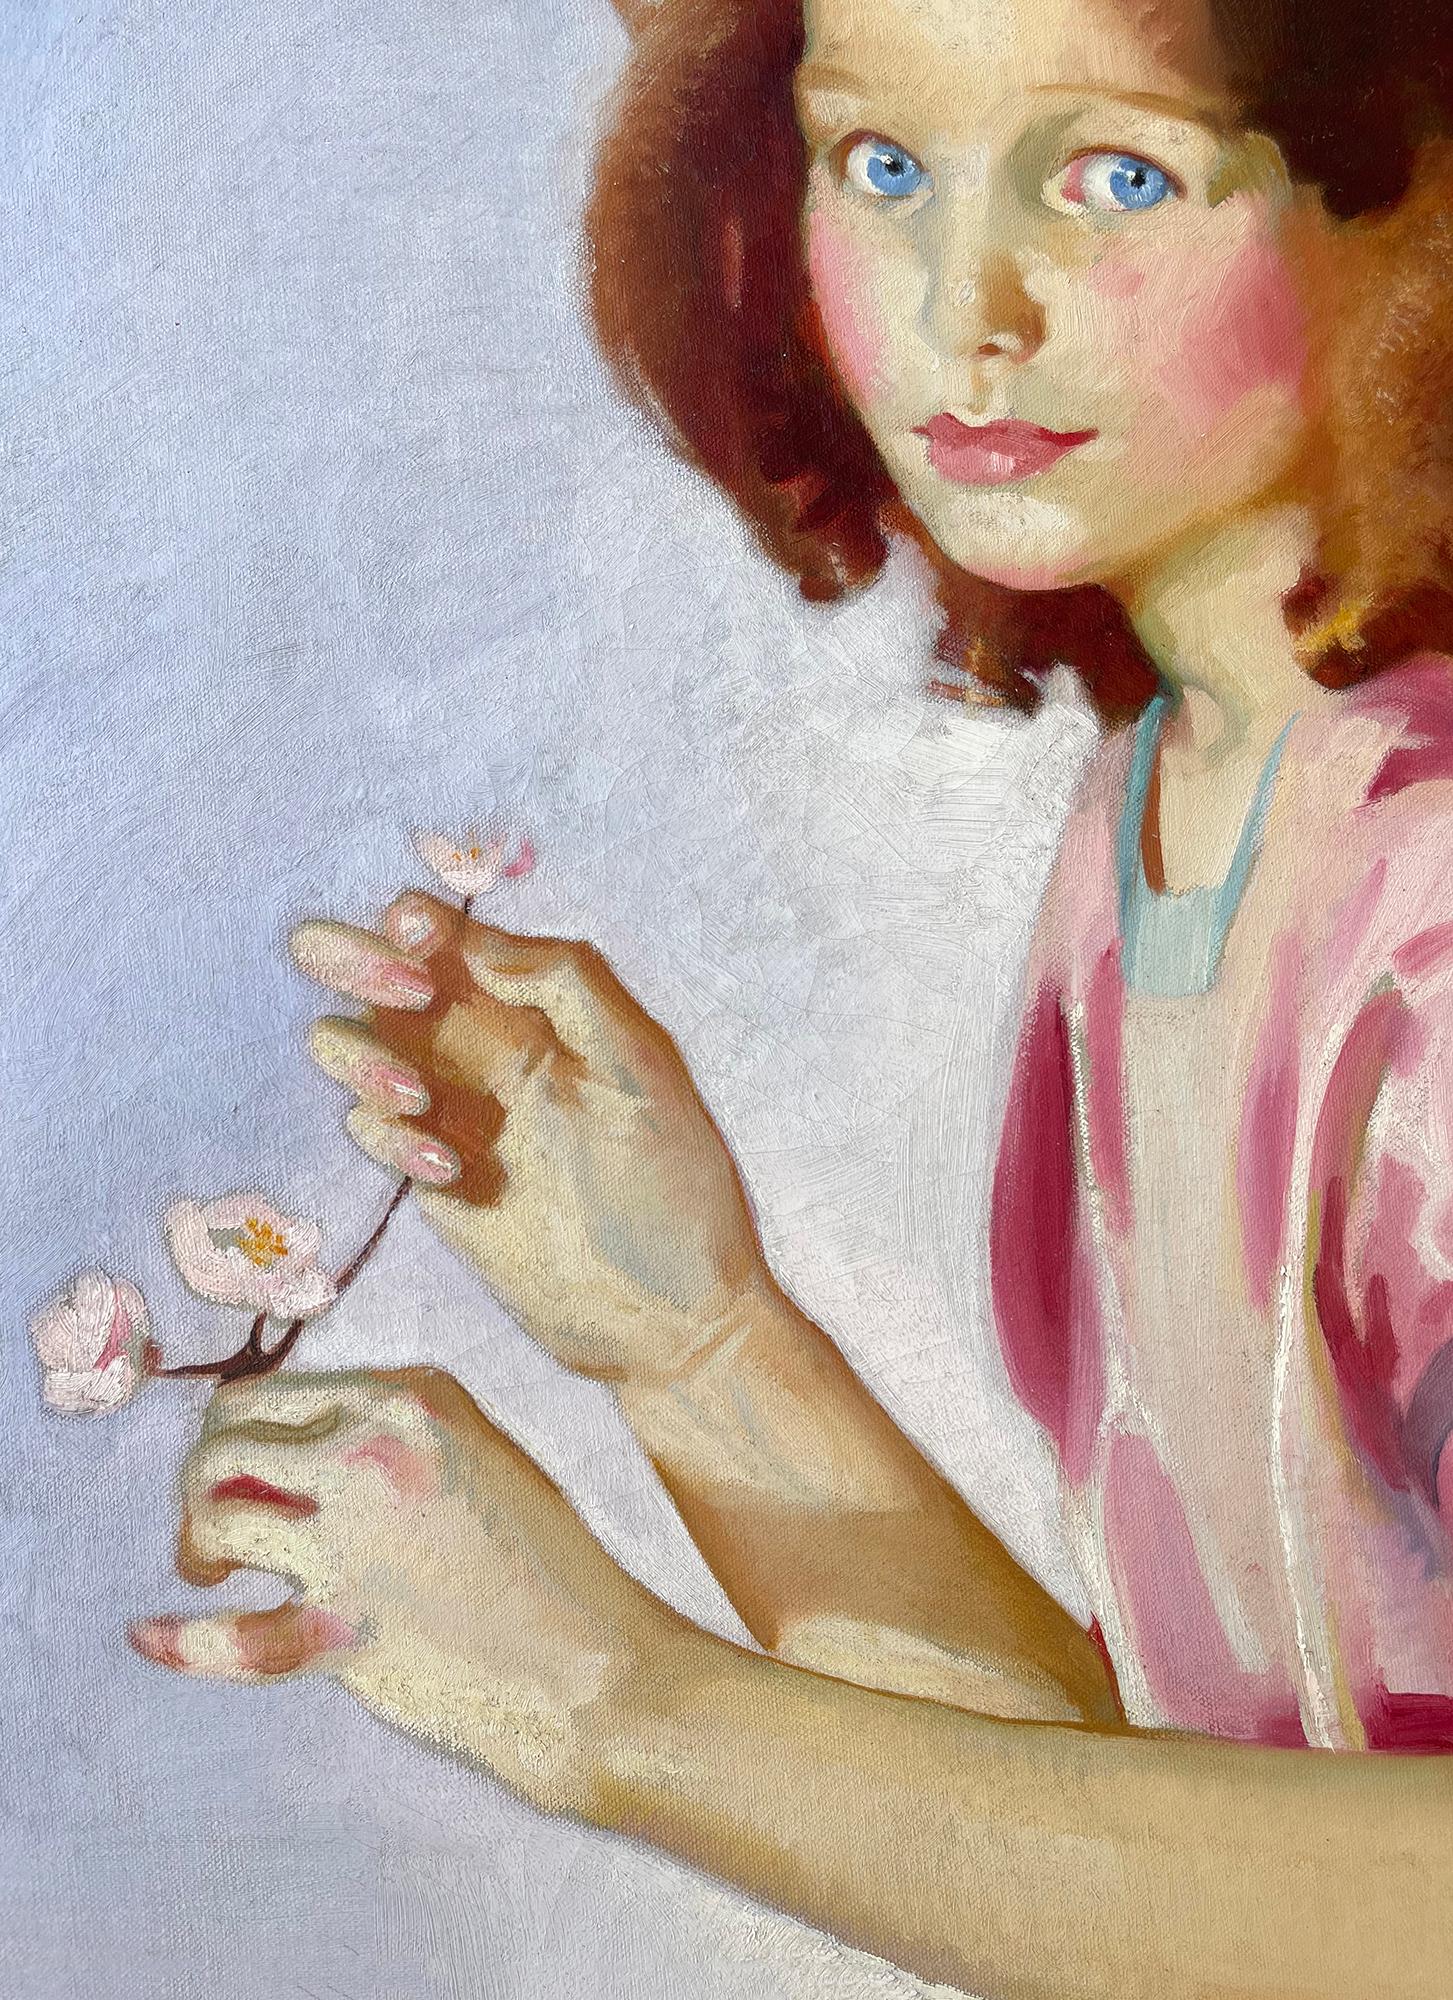 Ein charmantes Porträt eines schönen blauäugigen Mädchens in einem rosa Kleid, das Blumen in der Hand hält. Es basiert auf den Porträts der Renaissance, bei denen das Motiv in den Vordergrund gerückt wird und im Hintergrund eine Landschaft zu sehen